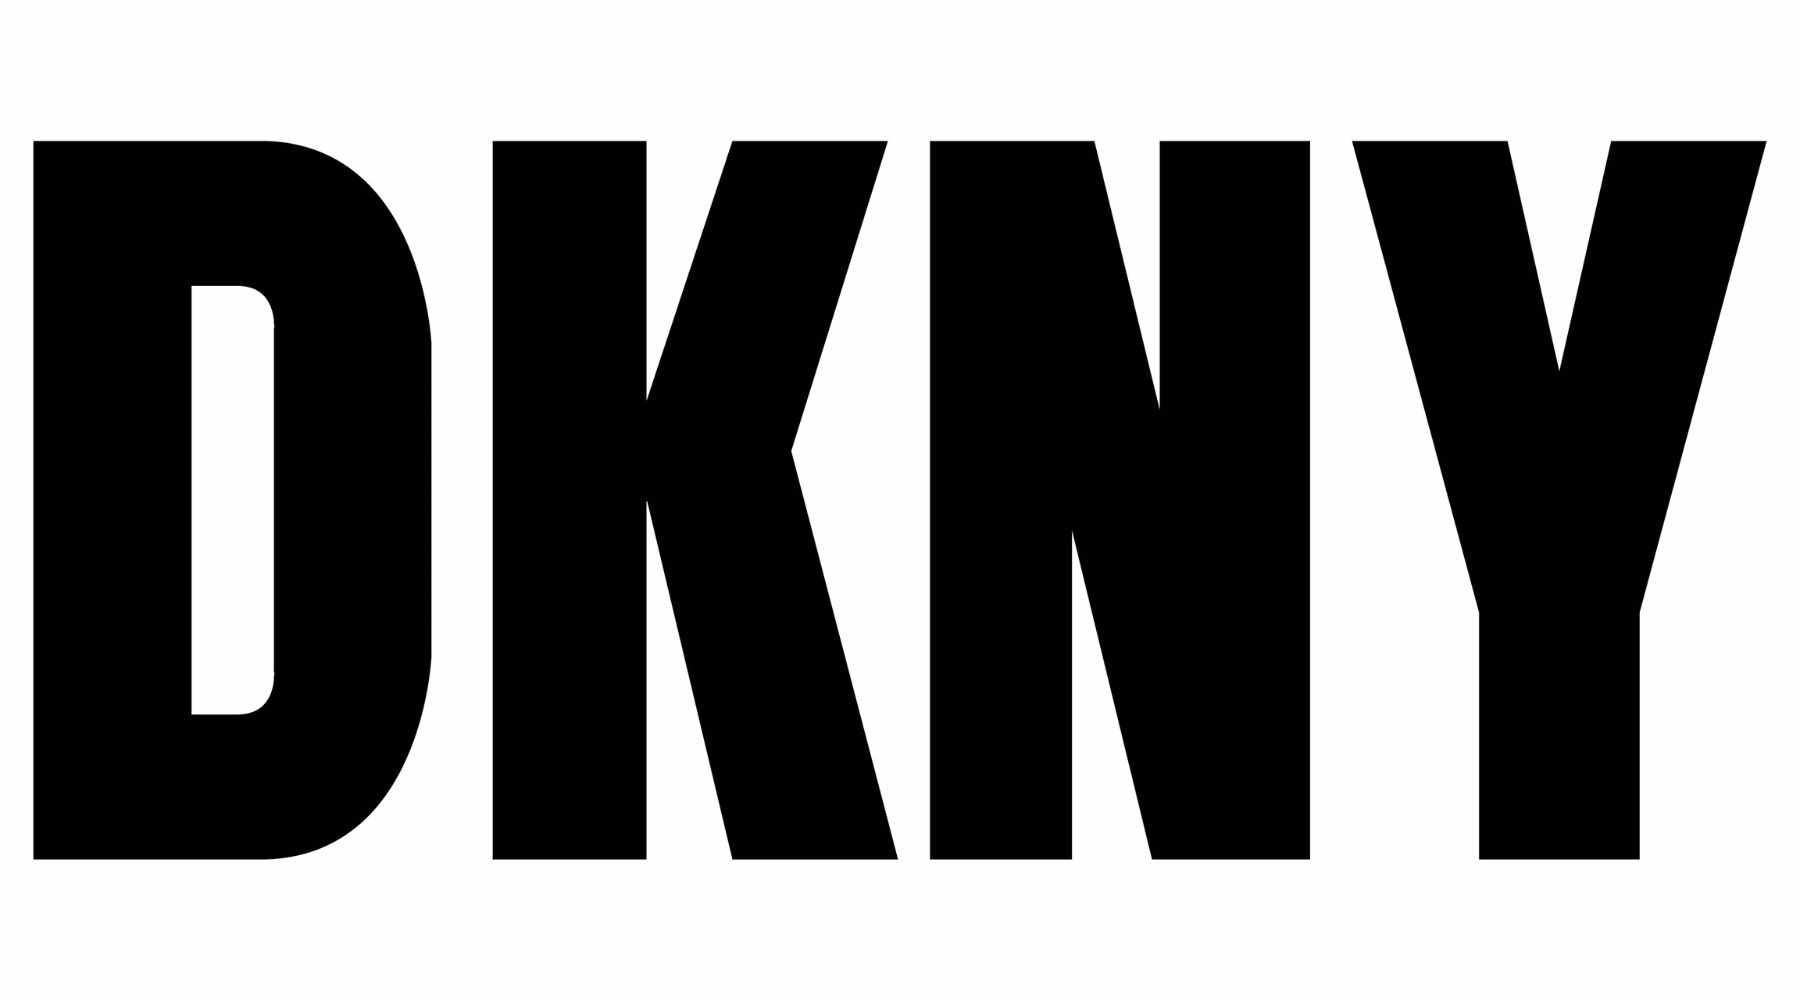 Logo of DKNY